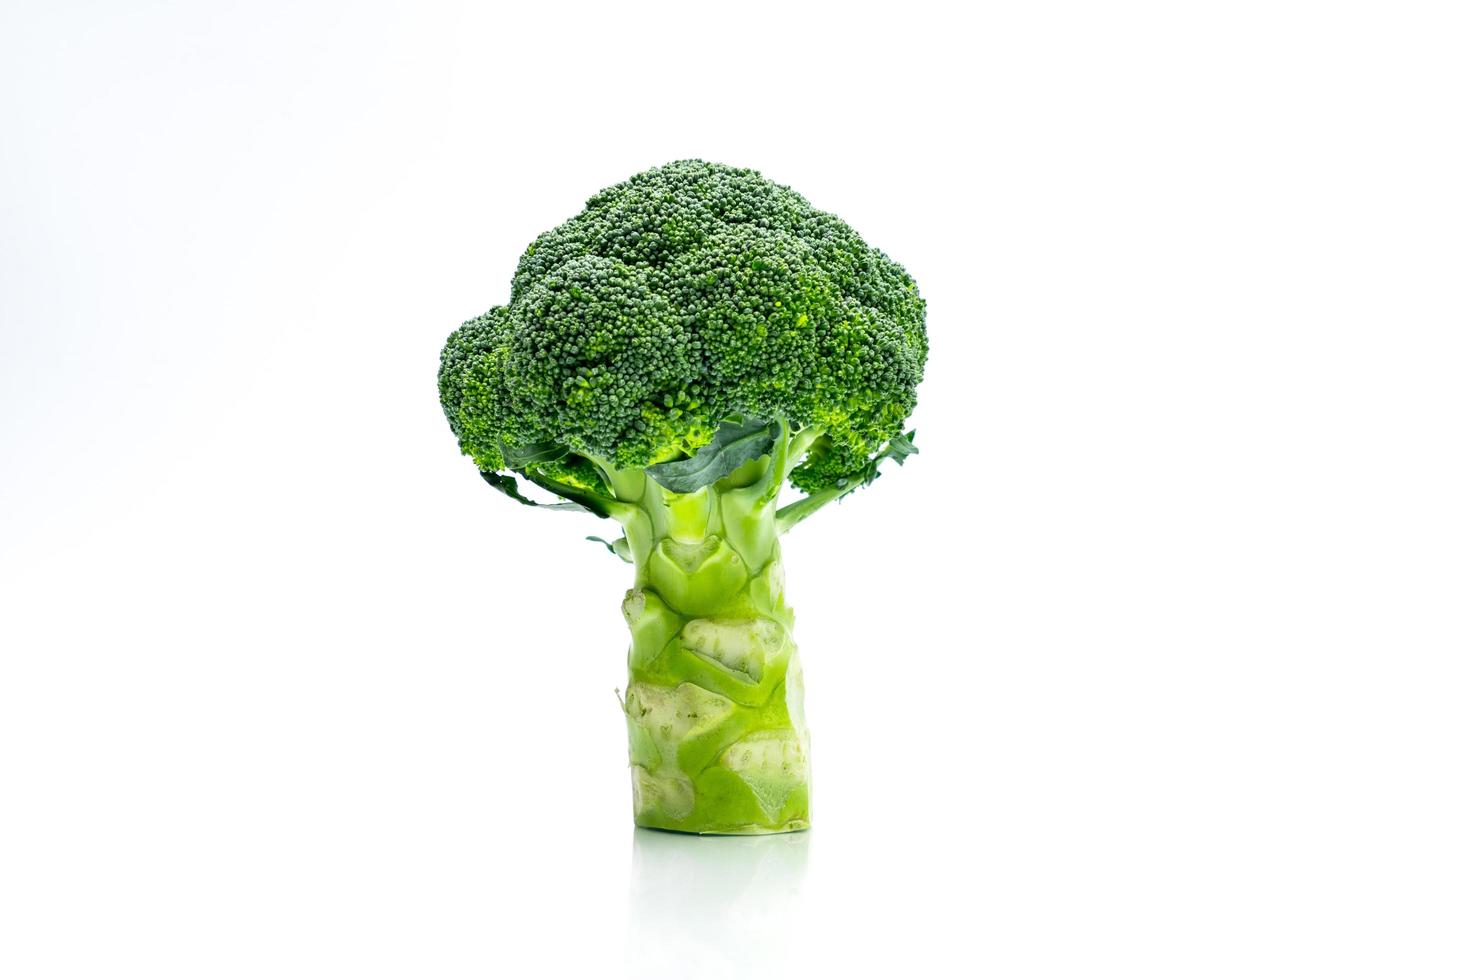 grön broccoli brassica oleracea. grönsaker naturlig källa till betakaroten, vitamin c, vitamin k, fiber mat, folat. färsk broccoli kål isolerad på vit bakgrund med kopia utrymme. foto